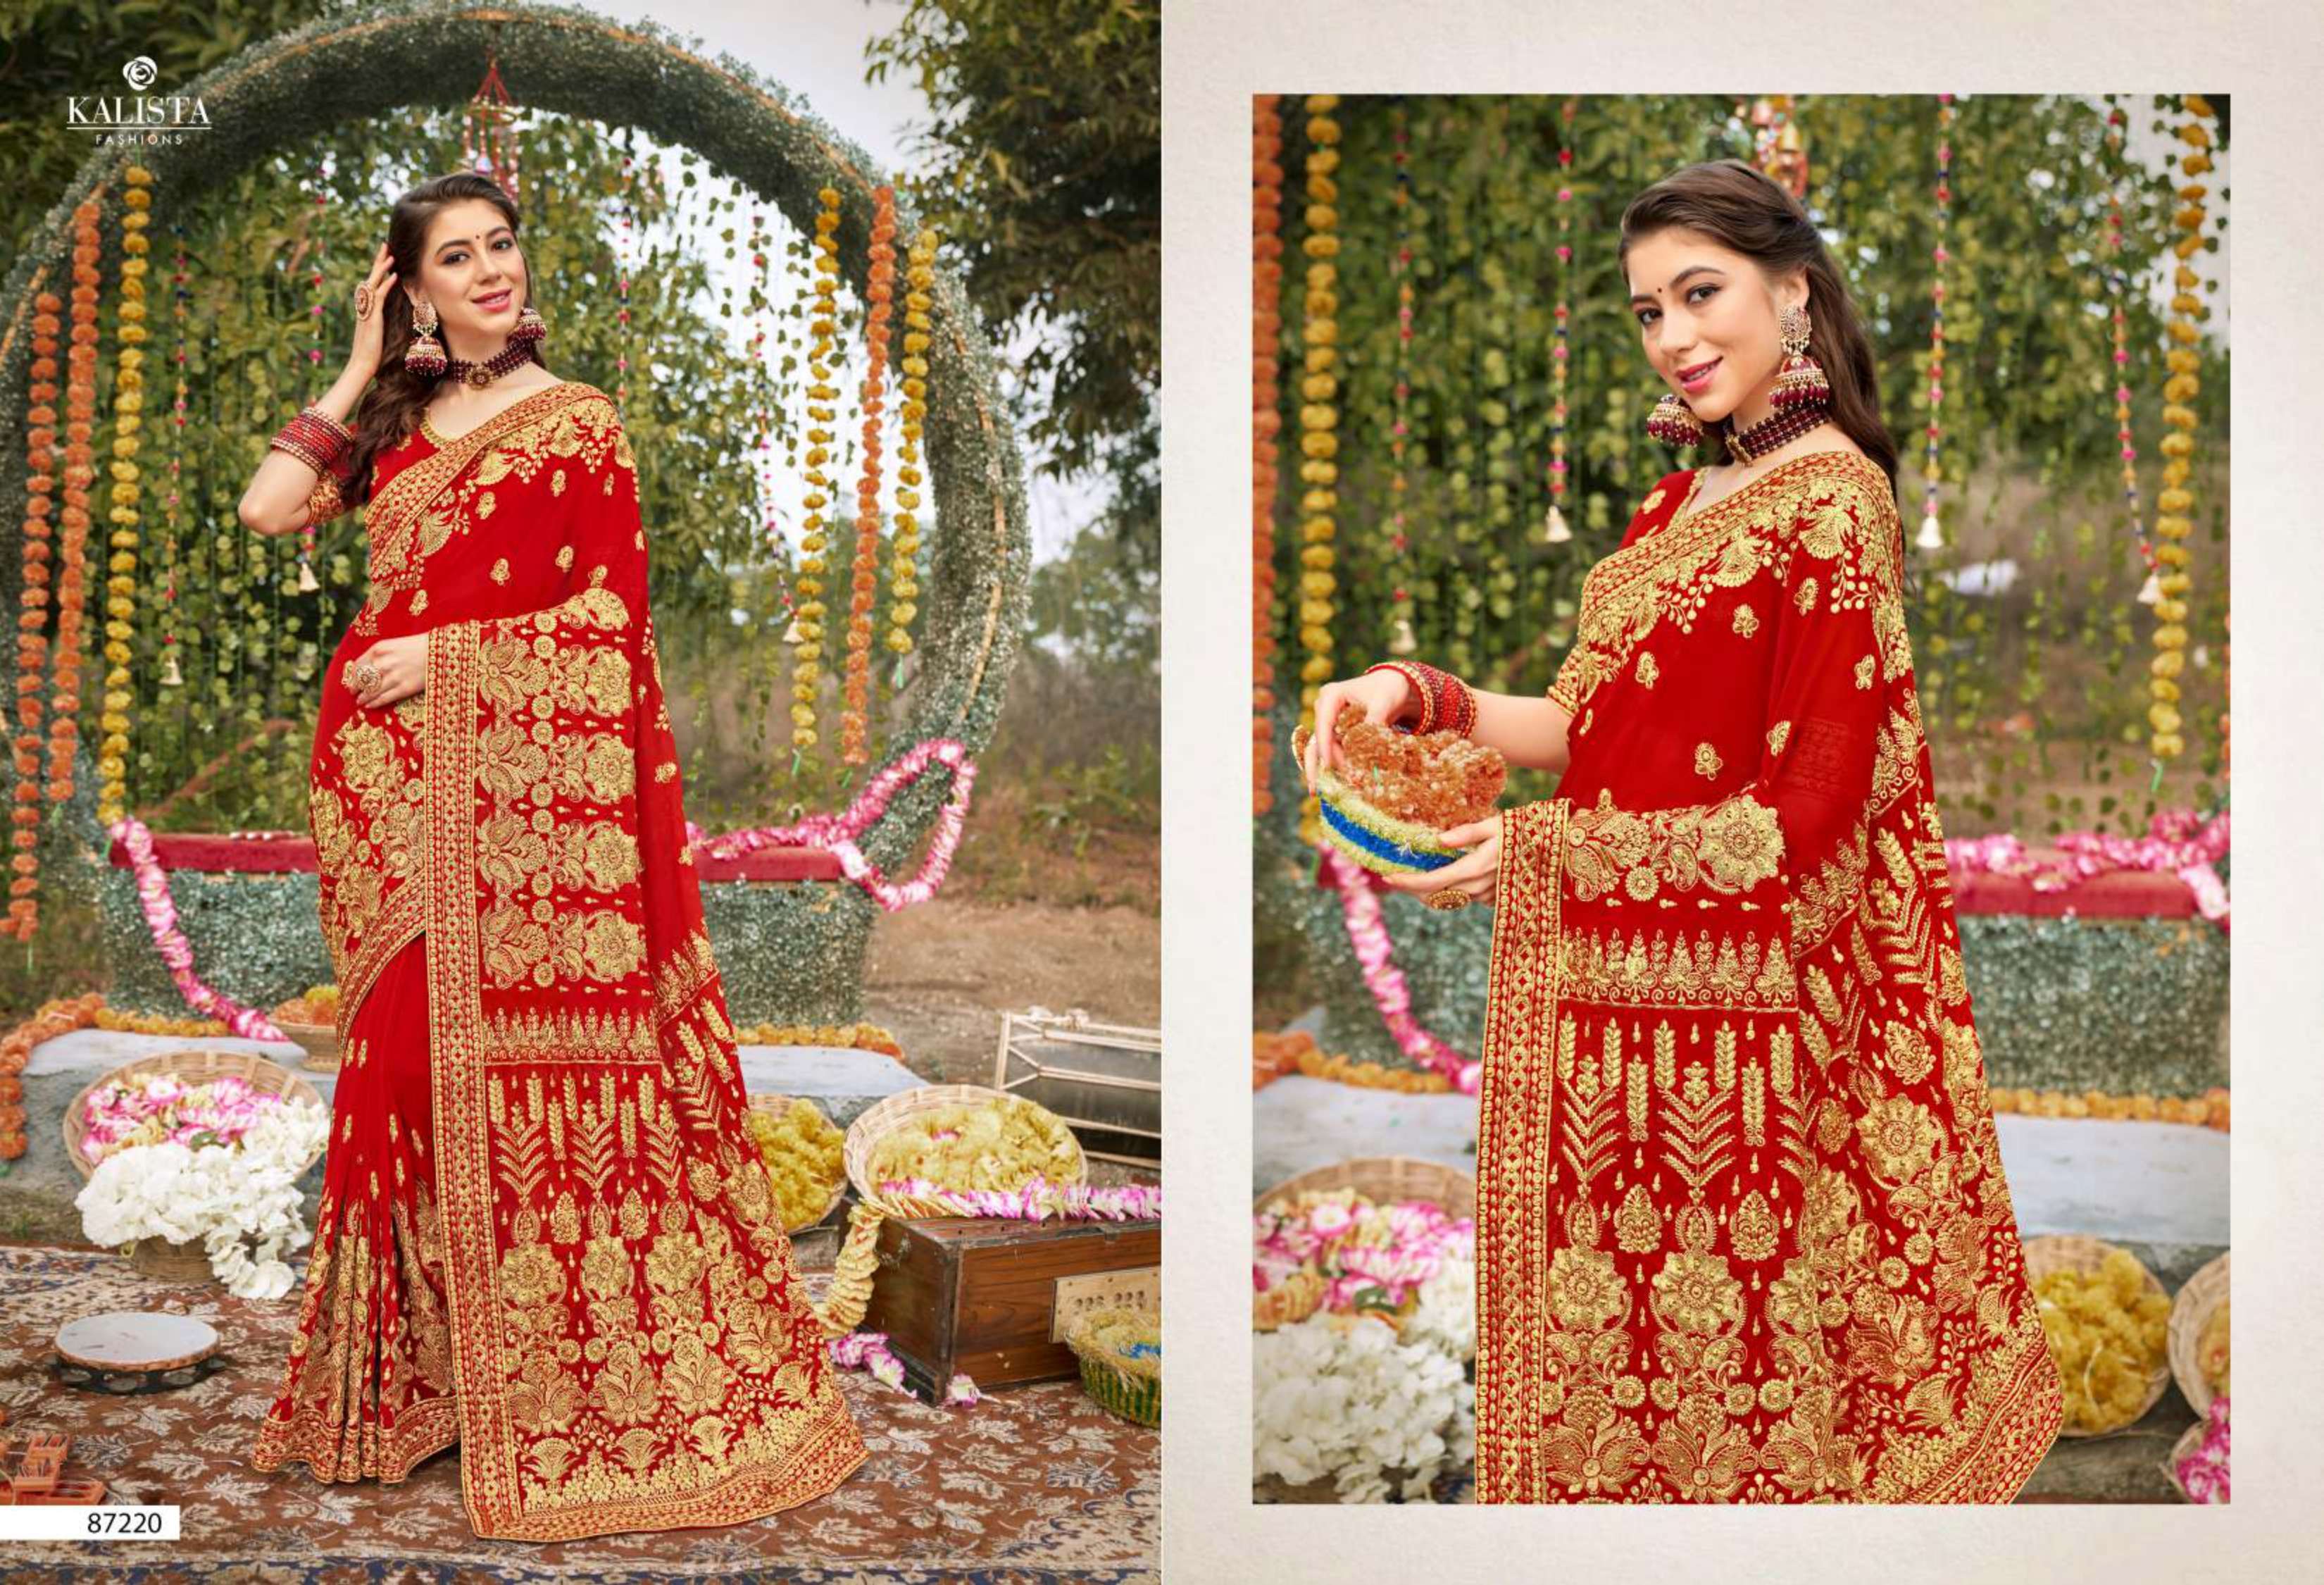 kalista presents kumkum bhagya dno 87215 87220 series indian women designer red bangladeshi special fancy silk saree party wedding festive diwali wear collection dlk4 5 2022 10 15 12 58 11